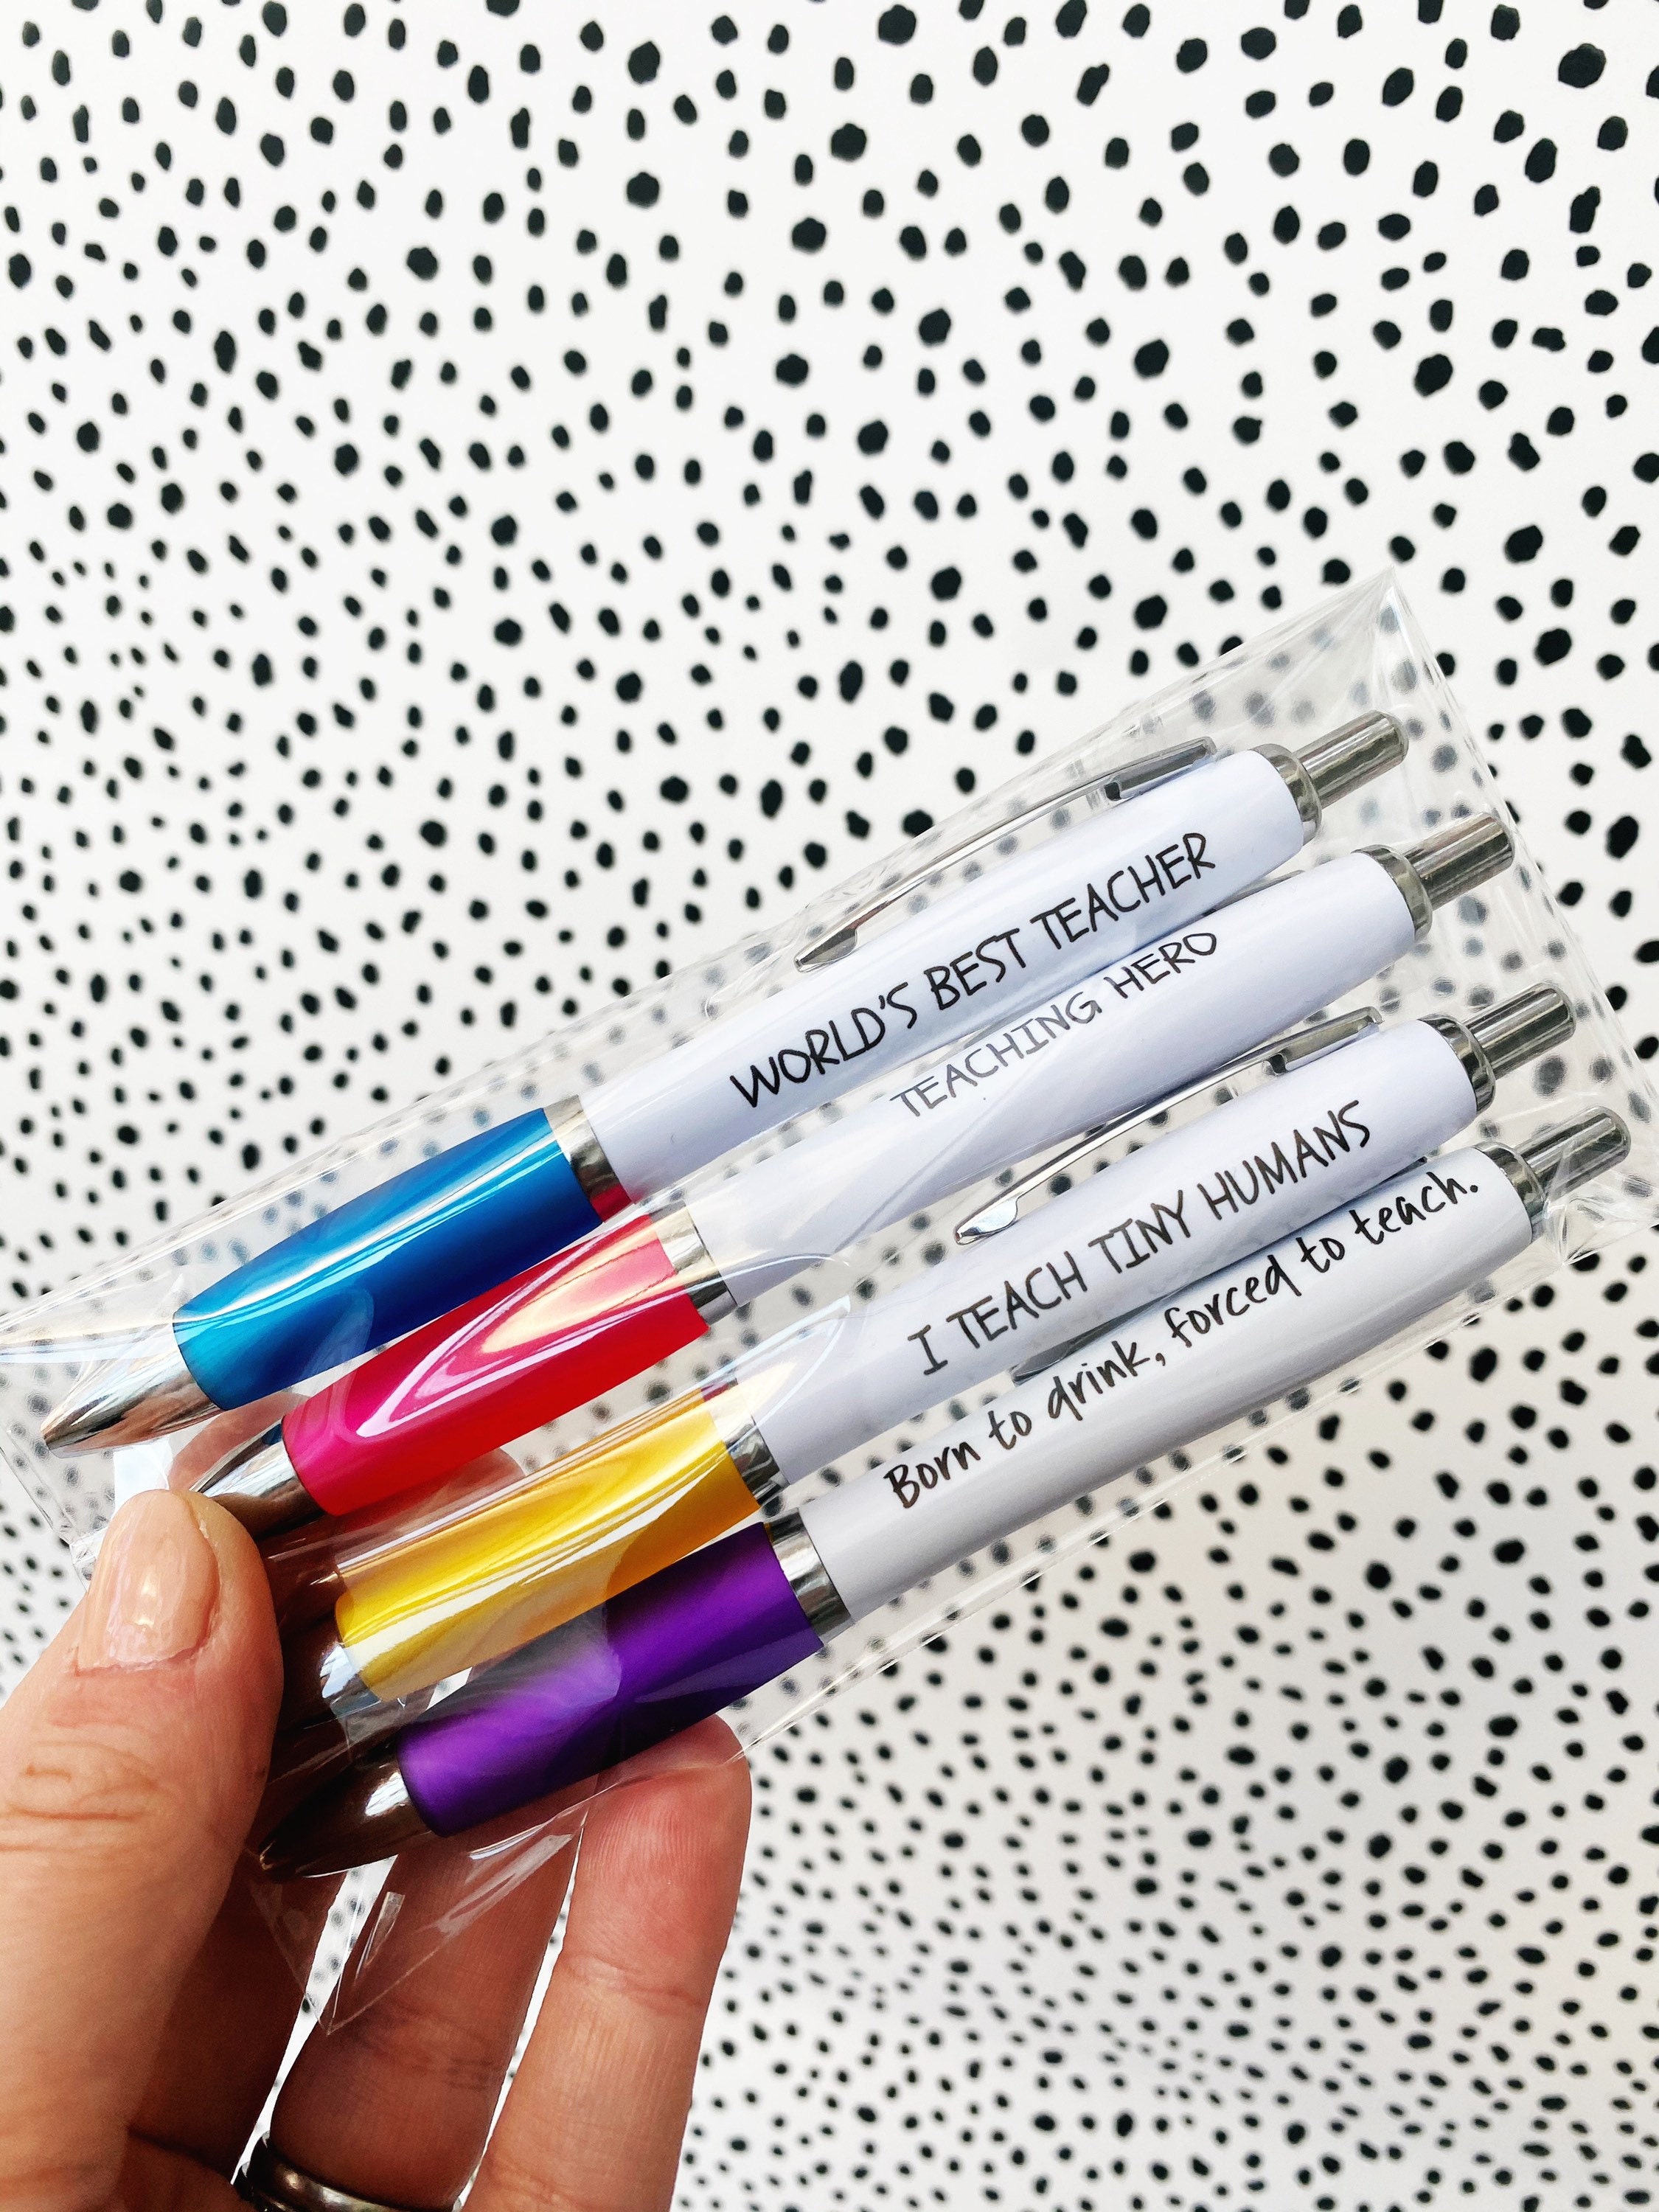 Best Teacher Ever Pen Set Colored Ink Pens Teacher Gifts Christmas